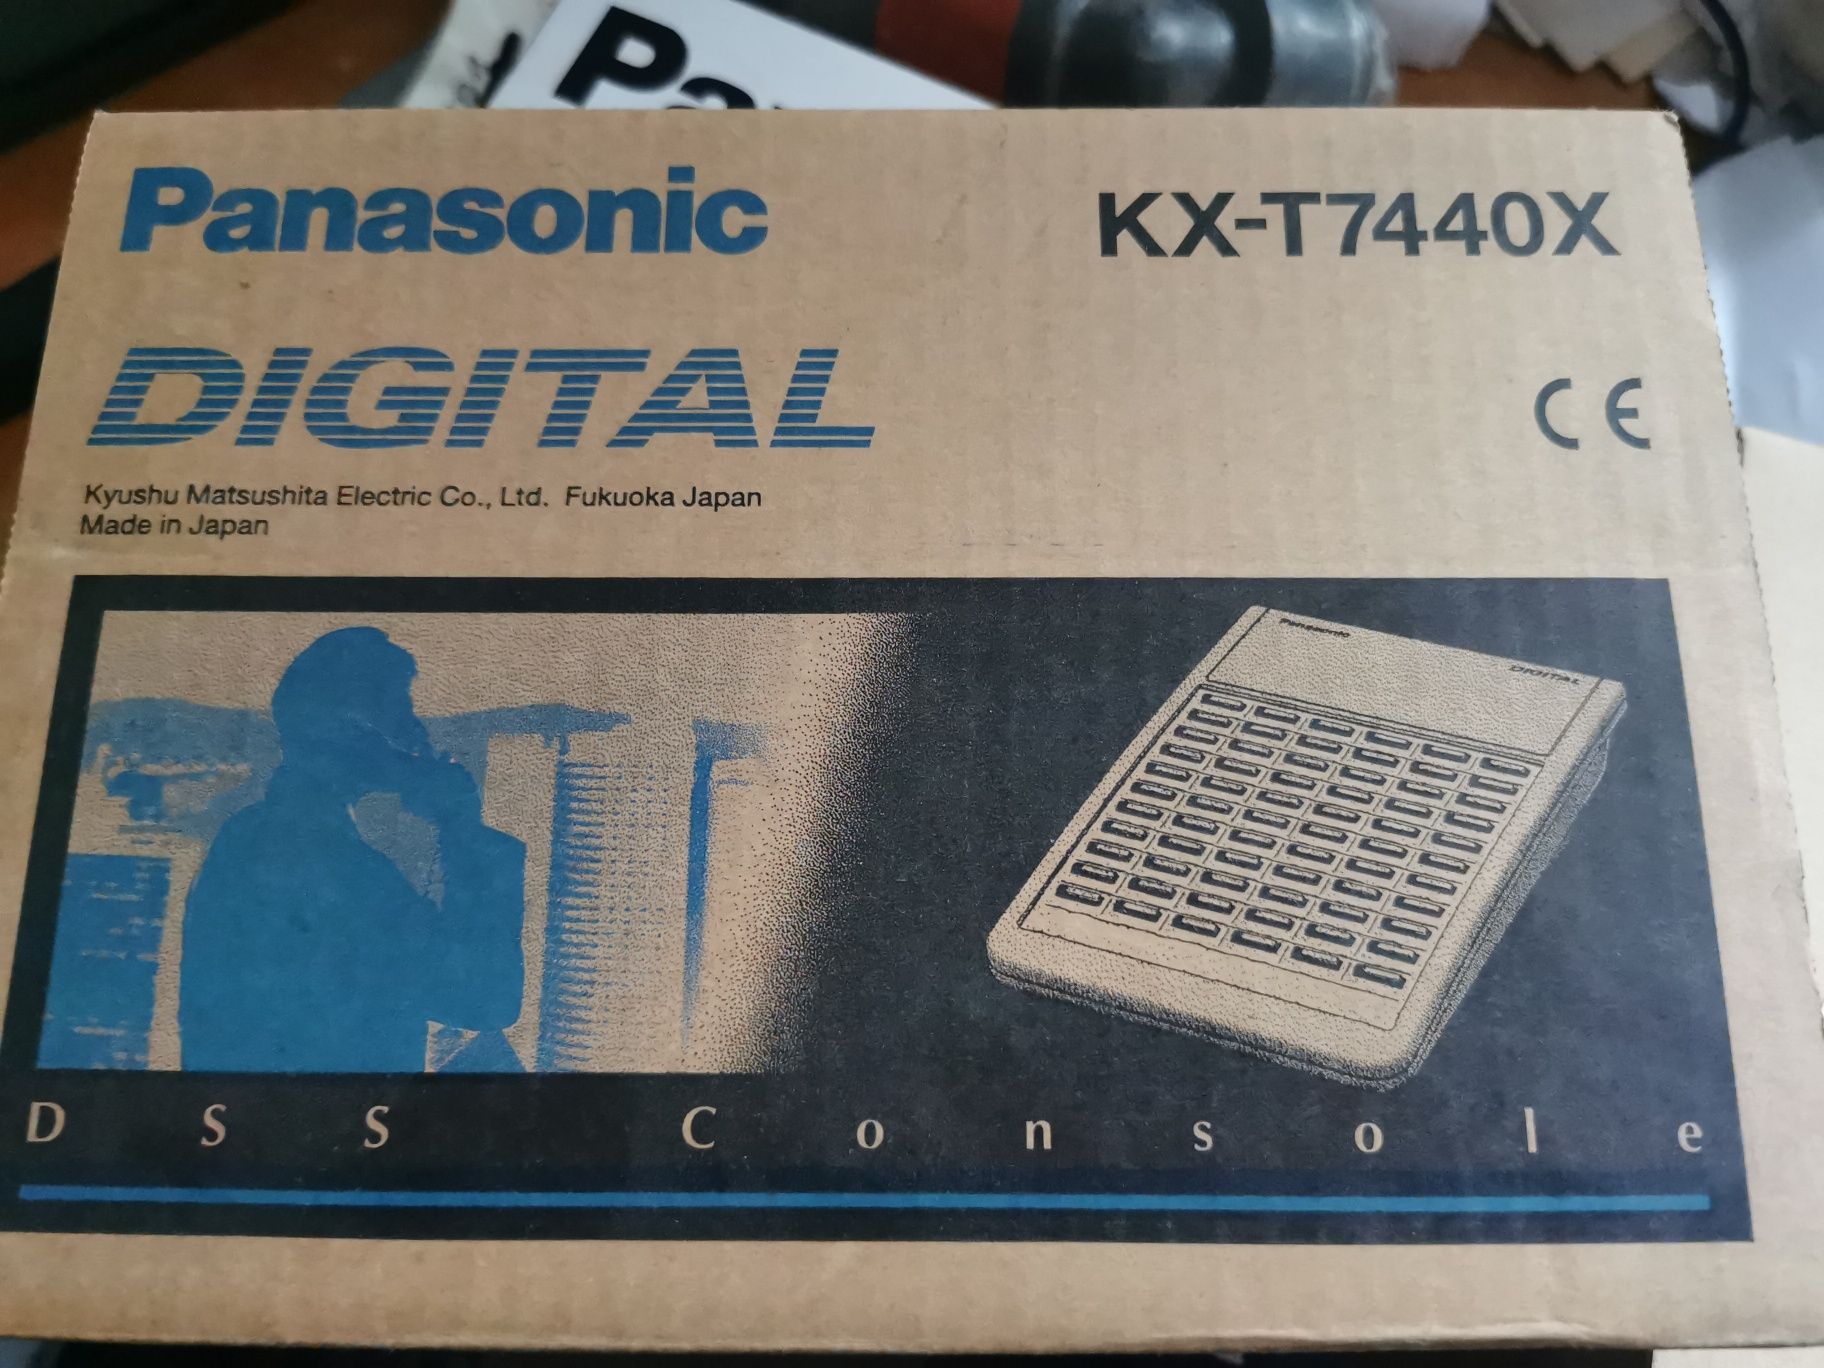 Sprzedam konsola telefoniczna Panasonic KX-T7440X